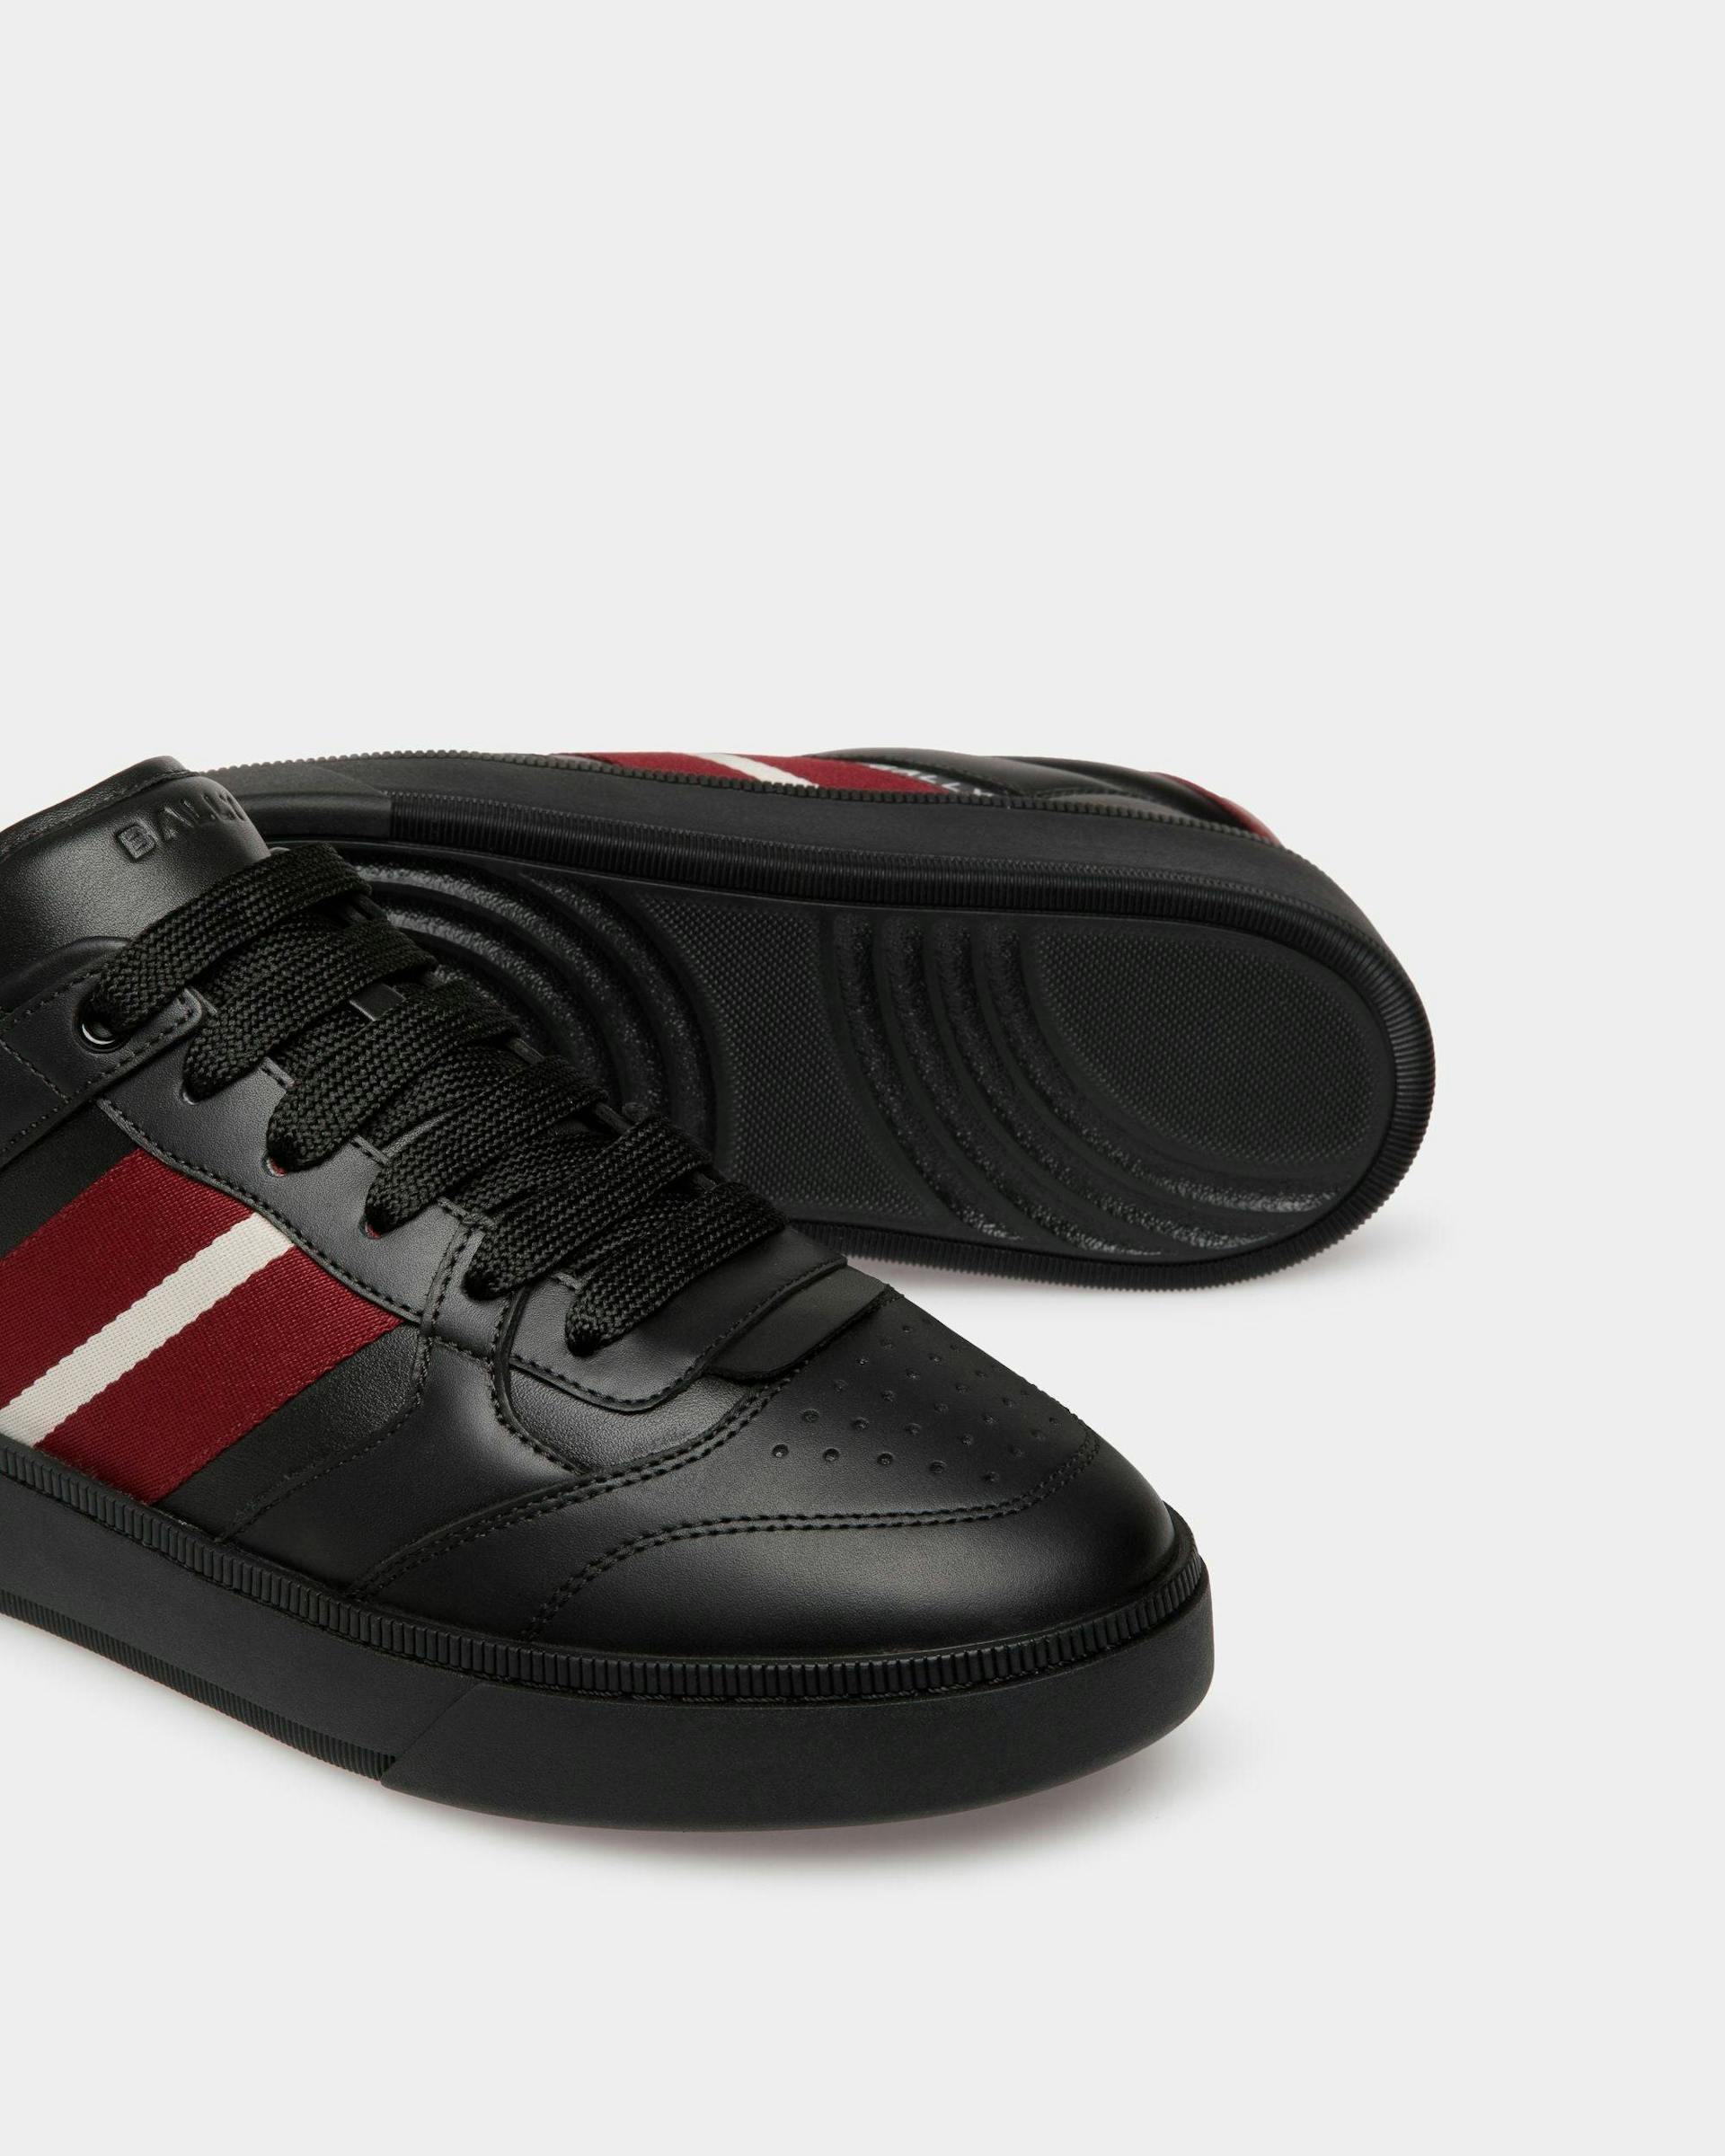 Men's Raise Sneaker In Black Leather | Bally | Still Life Below